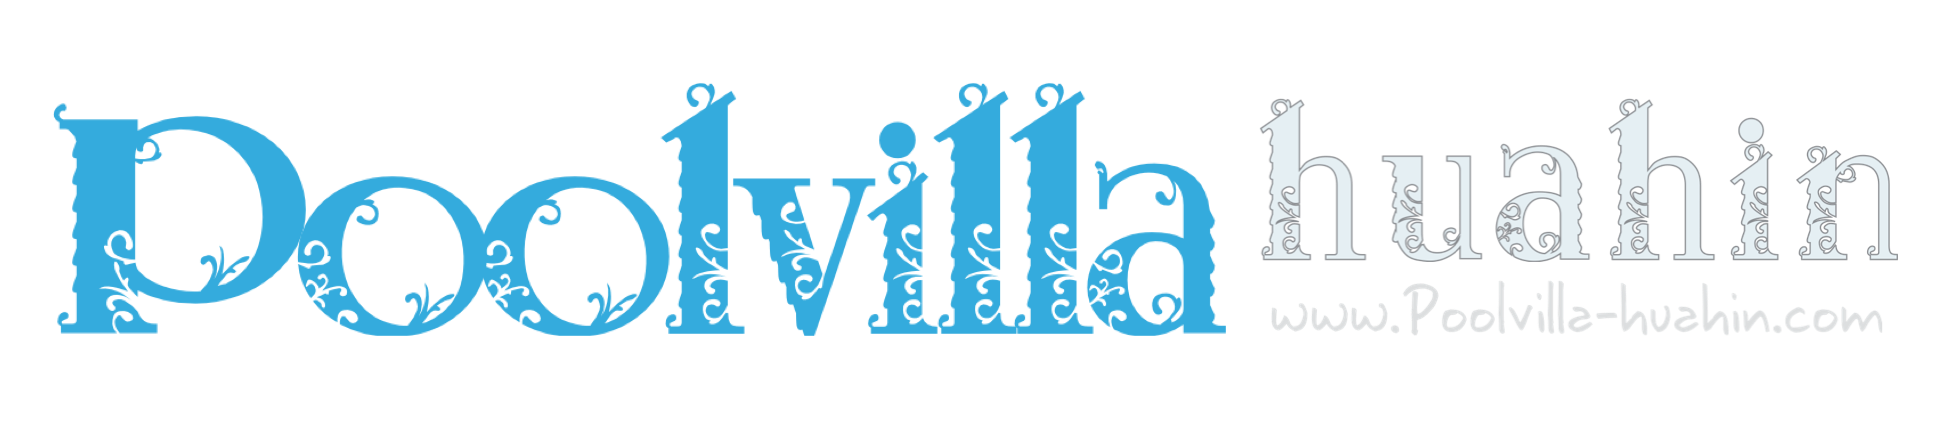 logo_web_Poolvilla